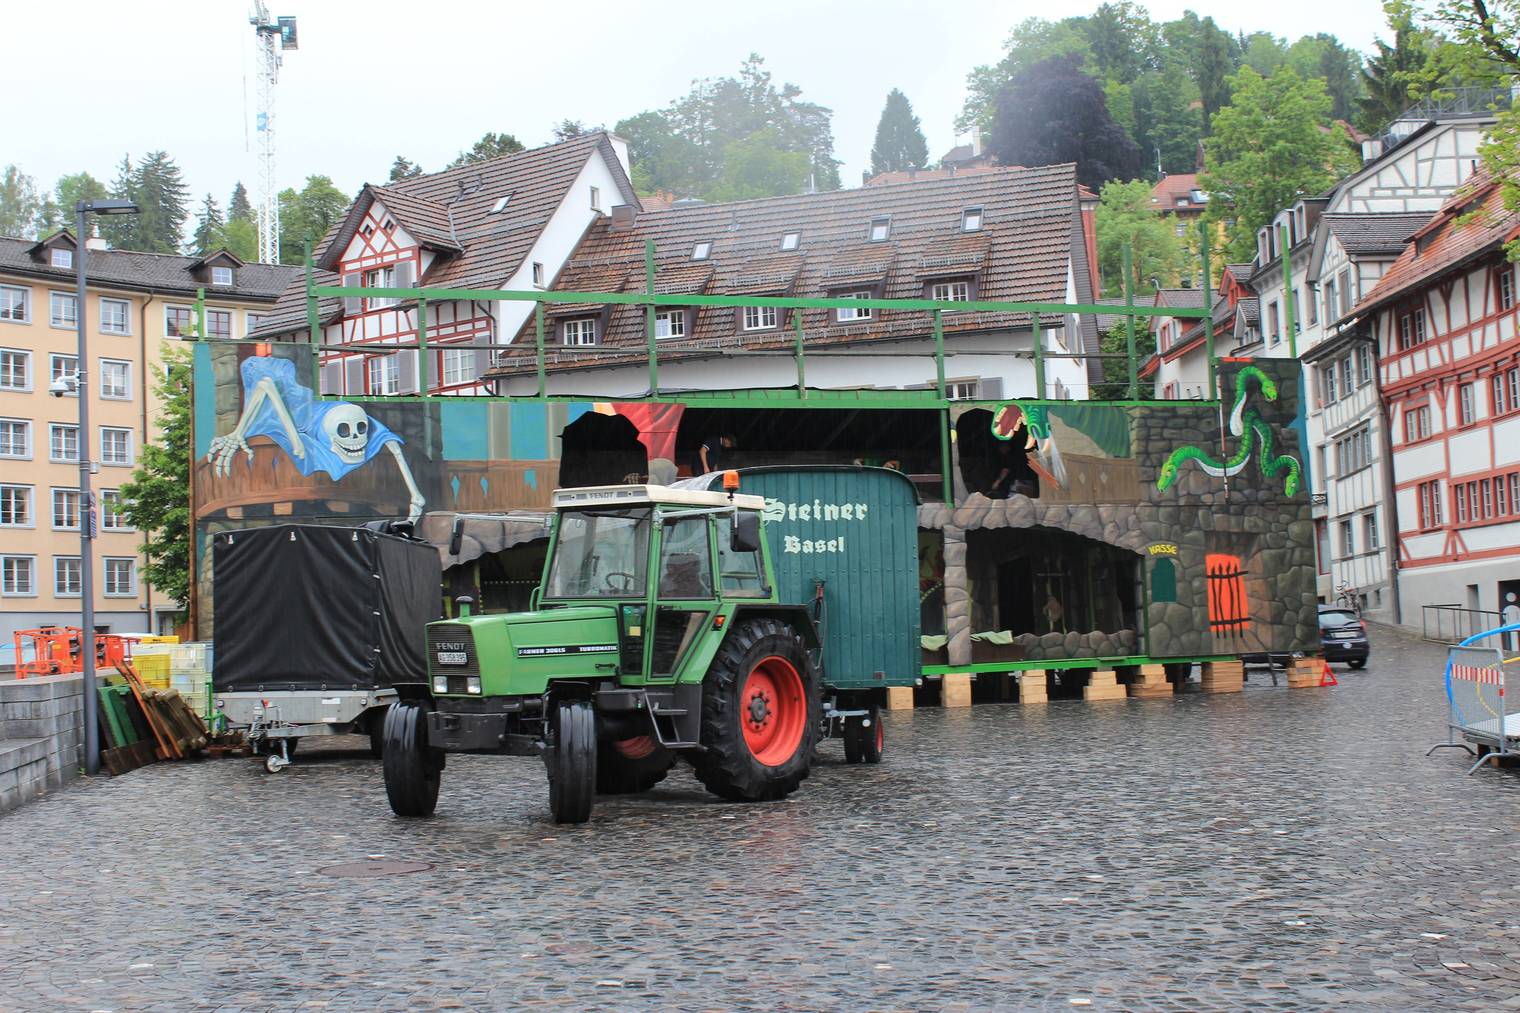 Mit einem Traktor wurden die einzelnen Wagen in die Ostschweiz gebracht (Bild: Lara Abderhalden)